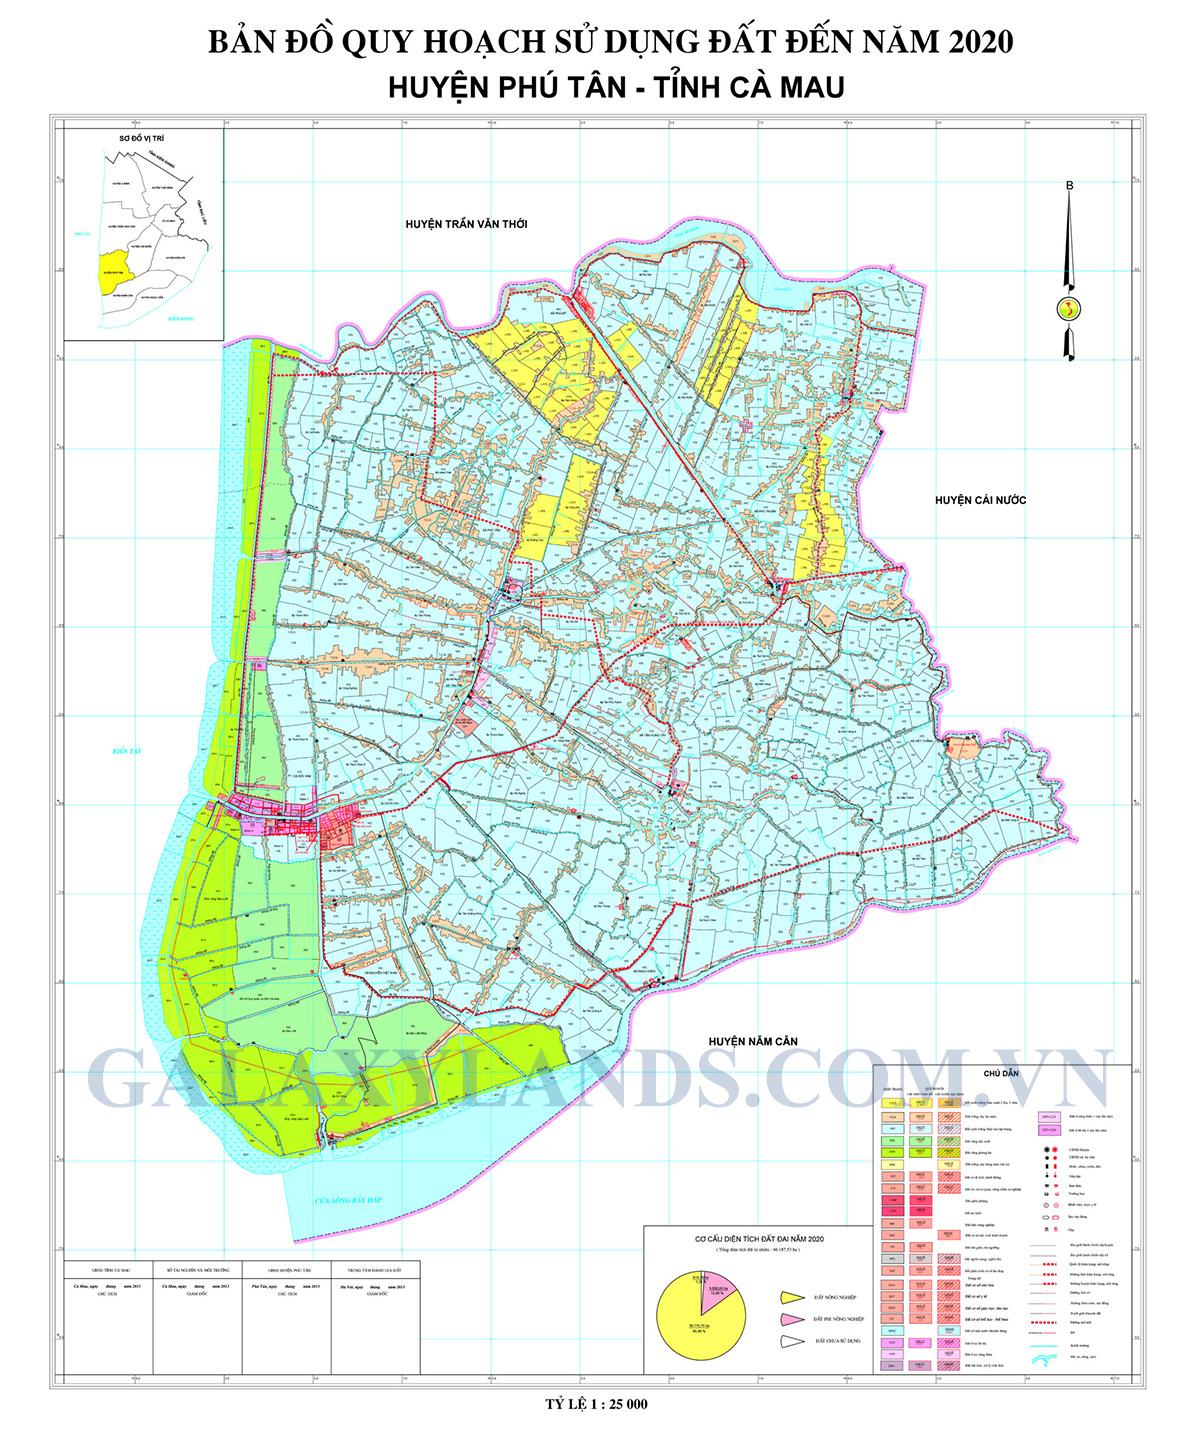 Bản đồ quy hoạch sử dụng đất Huyện Phú Tân tỉnh Cà Mau